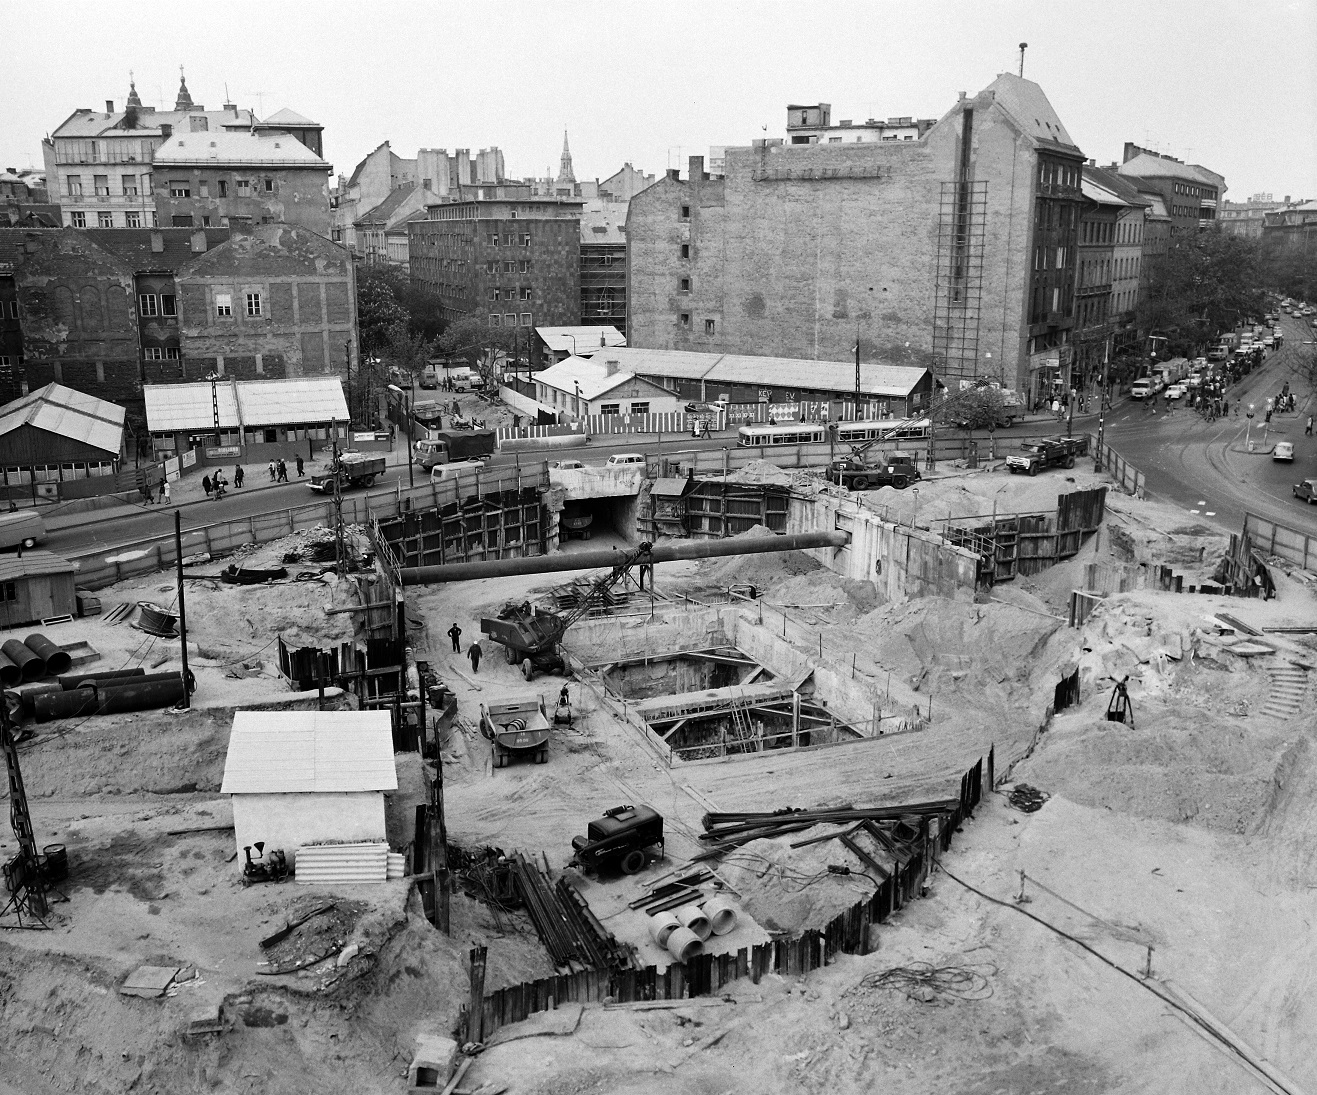 A 4-es metró előtt már egyszer, 1975-ben feltúrták a Kálvin teret, hogy a hármas metróhoz vezető részt és az aluljárót kiépíthessék. De mi az a nagy üresség ott szemben? Bizony, a szállodák még hiányoznak a Kecskeméti utca bejáratától. Fotó: Fortepan.hu